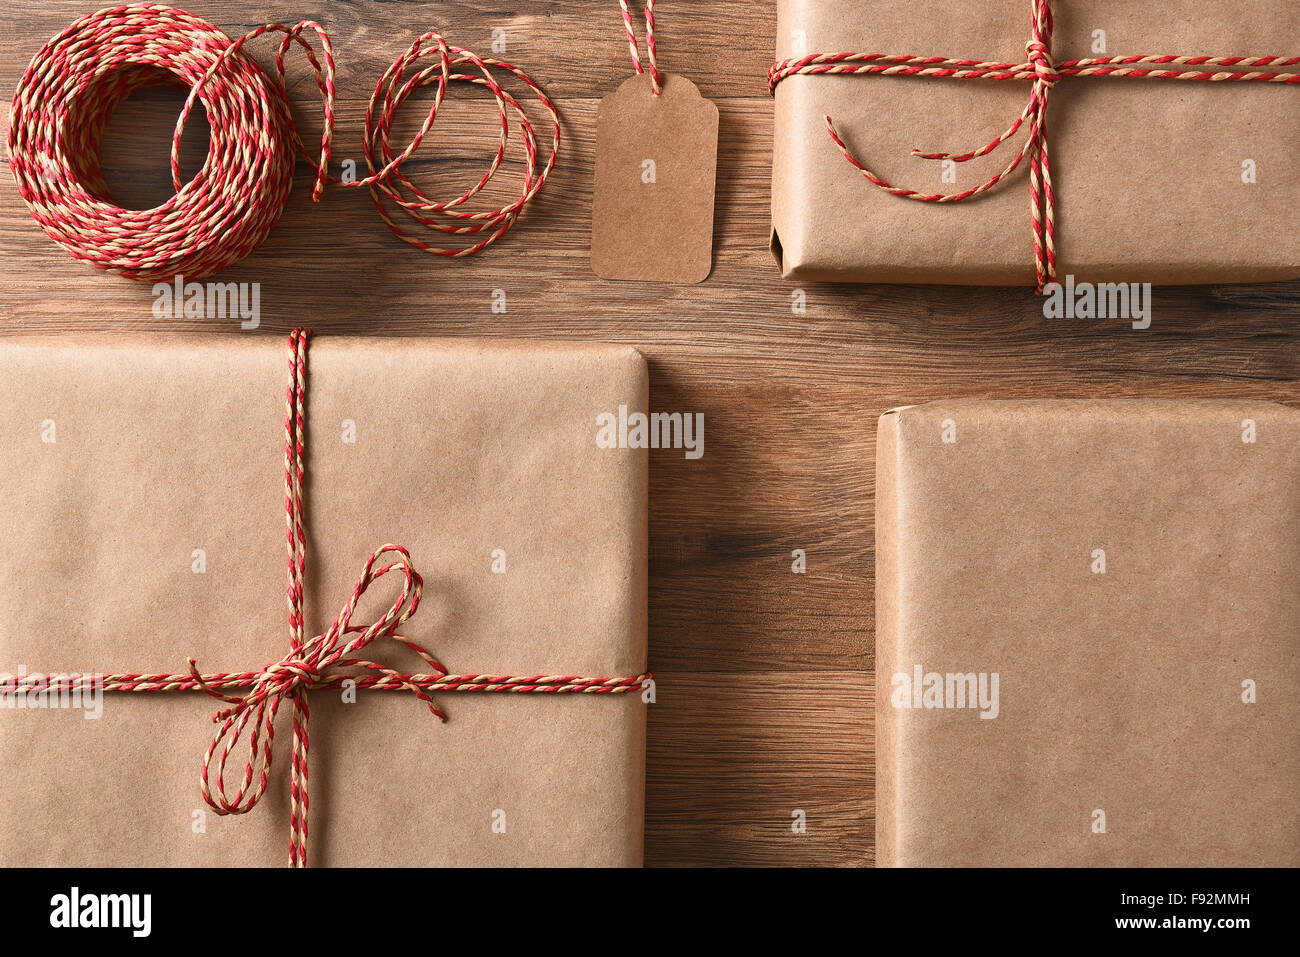 Des cadeaux de Noël emballés avec du papier recyclable et écologique et cordon. High angle libre en format horizontal. Banque D'Images